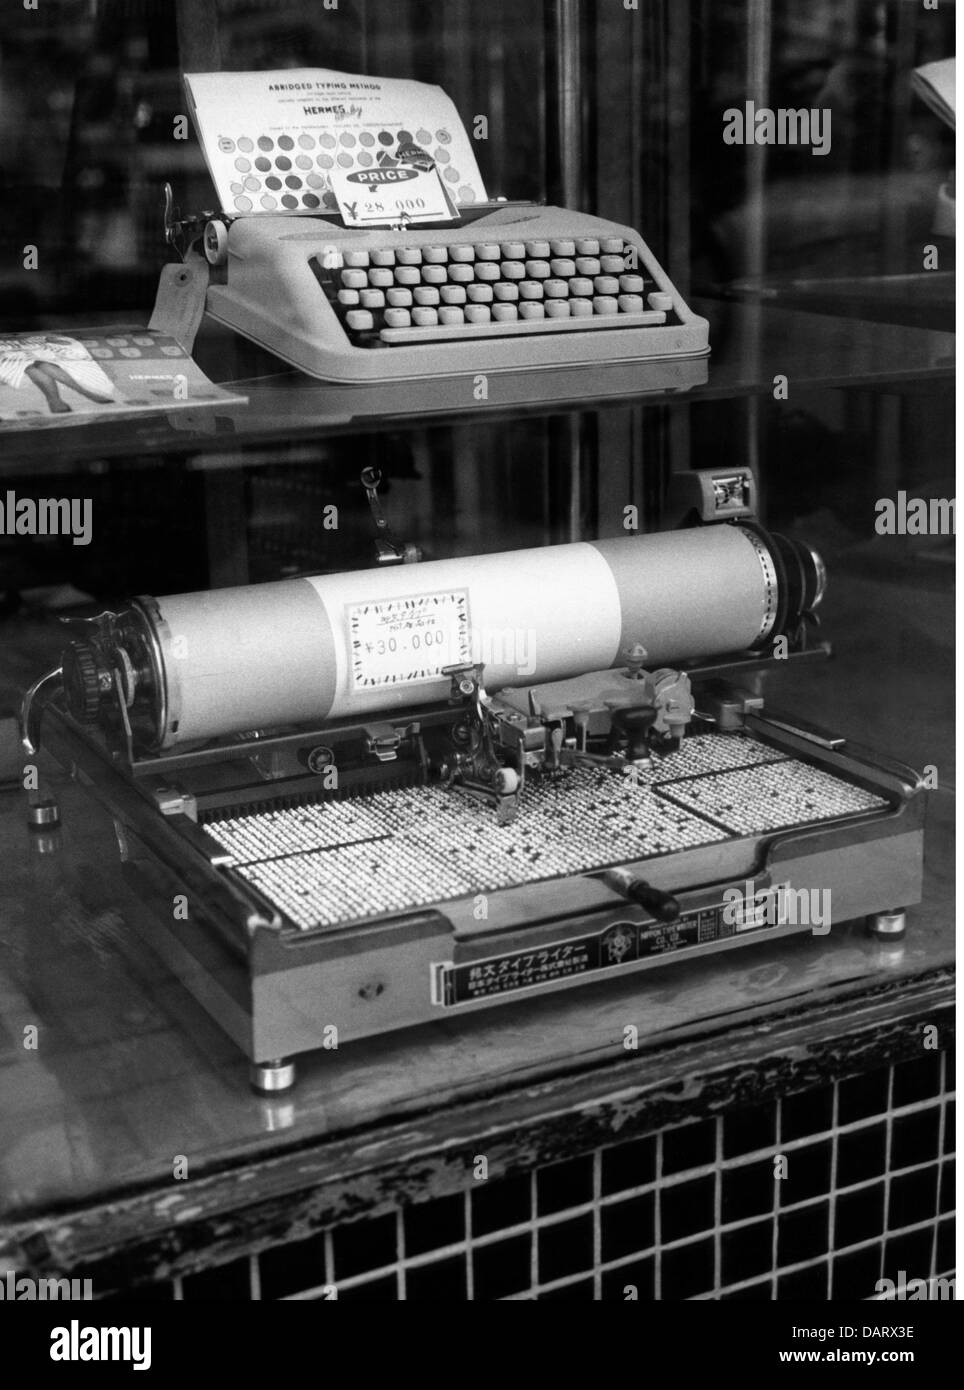 bureau, matériel de bureau, machine à écrire, vitrine avec machine à écrire européenne et japonaise, Japon, 30.8.1960, droits additionnels-Clearences-non disponible Banque D'Images